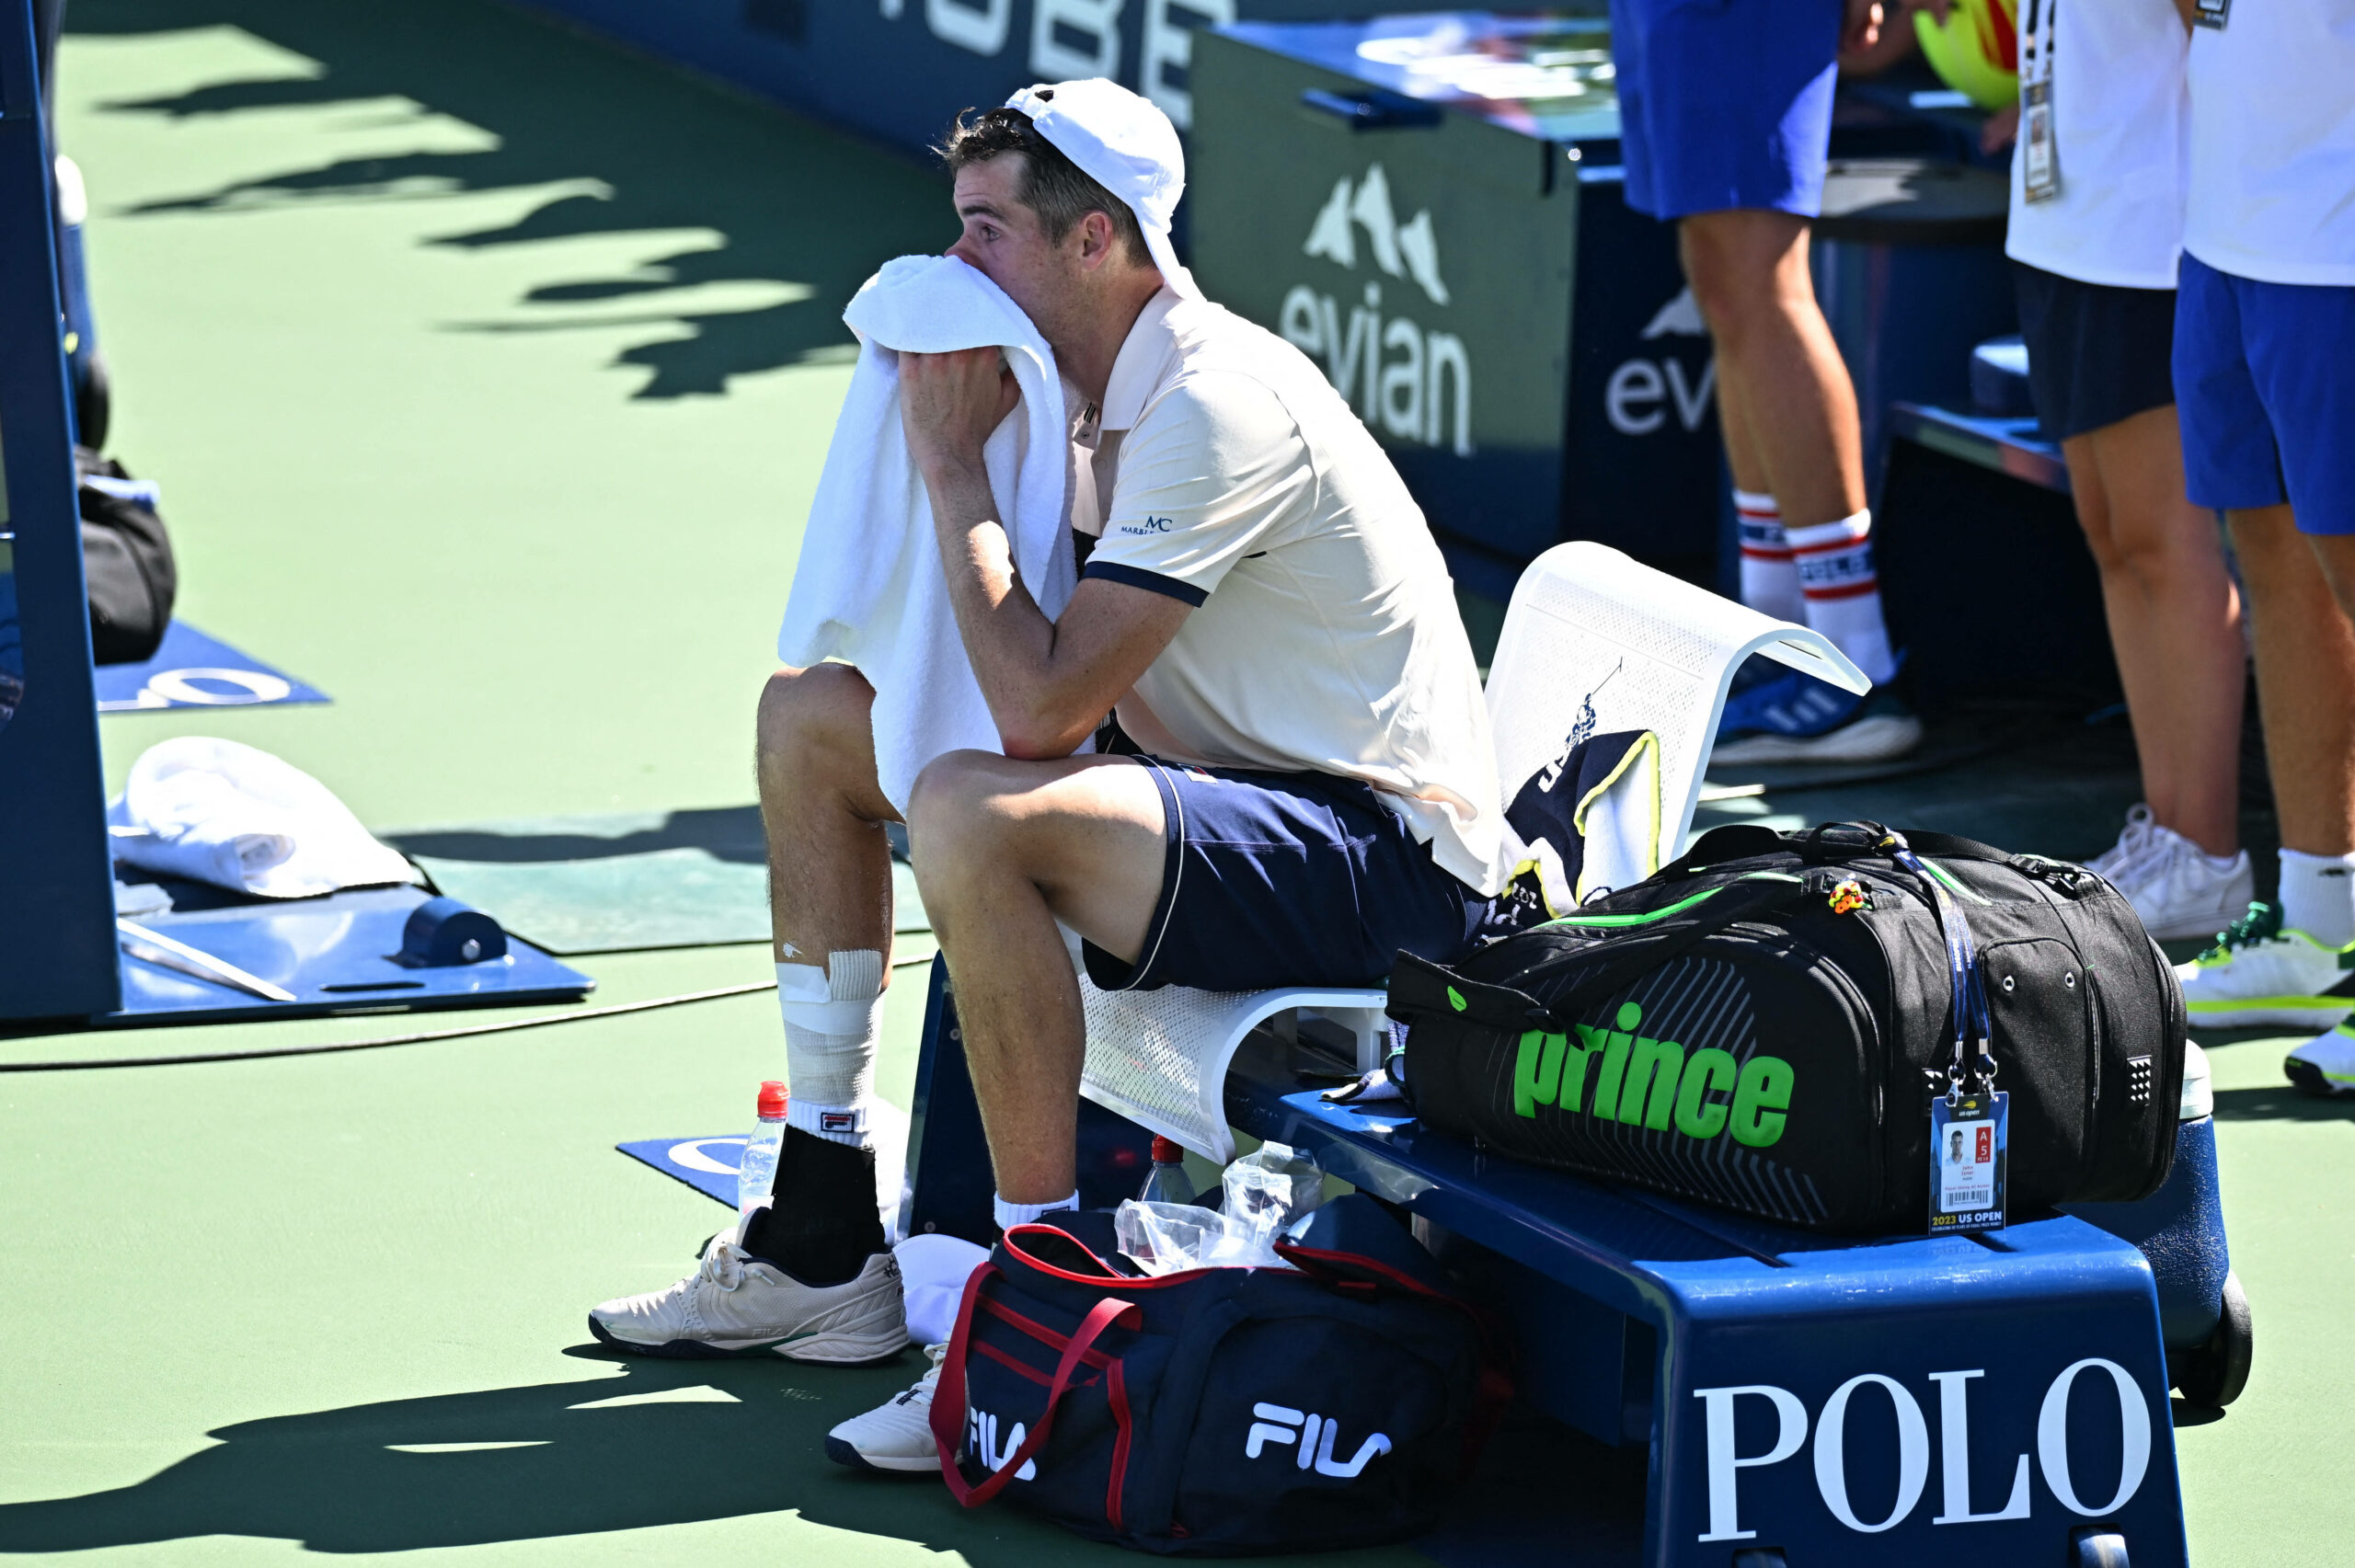 John Isner nach seiner Niederlage bei den US Open